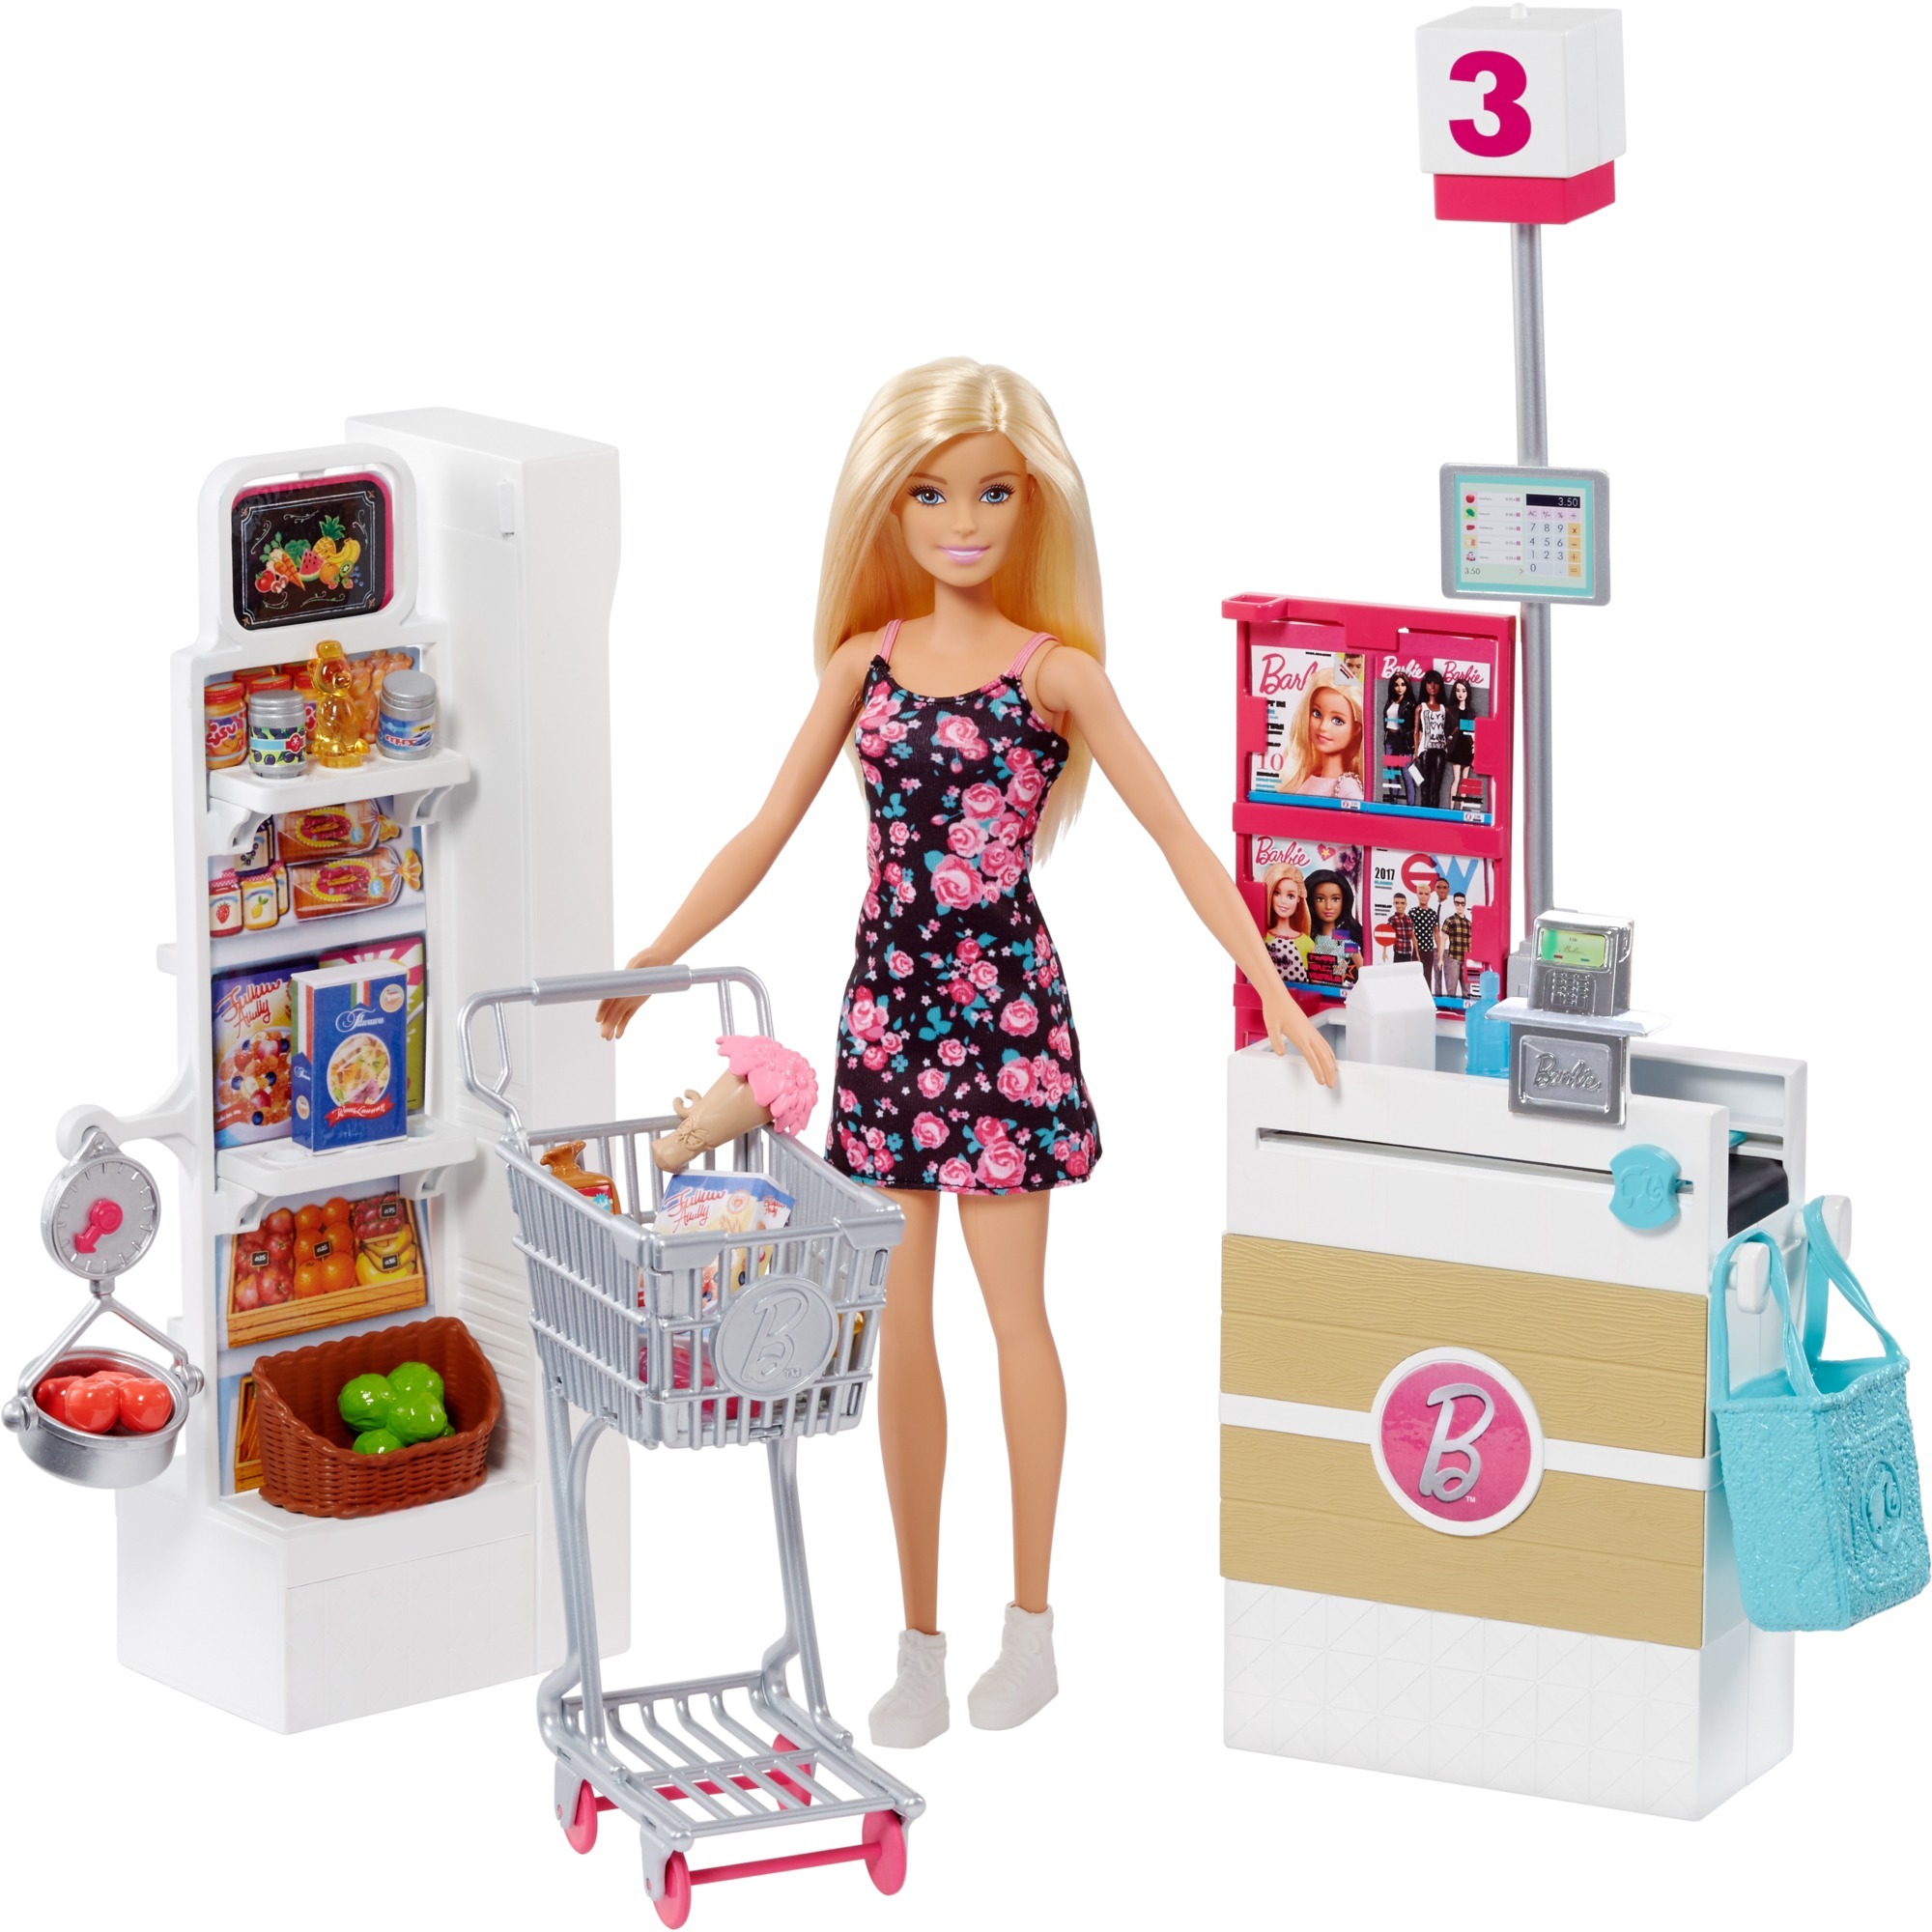 Куклы недорогие магазинов. Mattel Barbie frp01 Барби супермаркет в ассортименте. Набор Barbie в супермаркете, 28 см, frp01. Игровой набор Mattel "Barbie новый дом мечты". Игровой набор Barbie frp01.